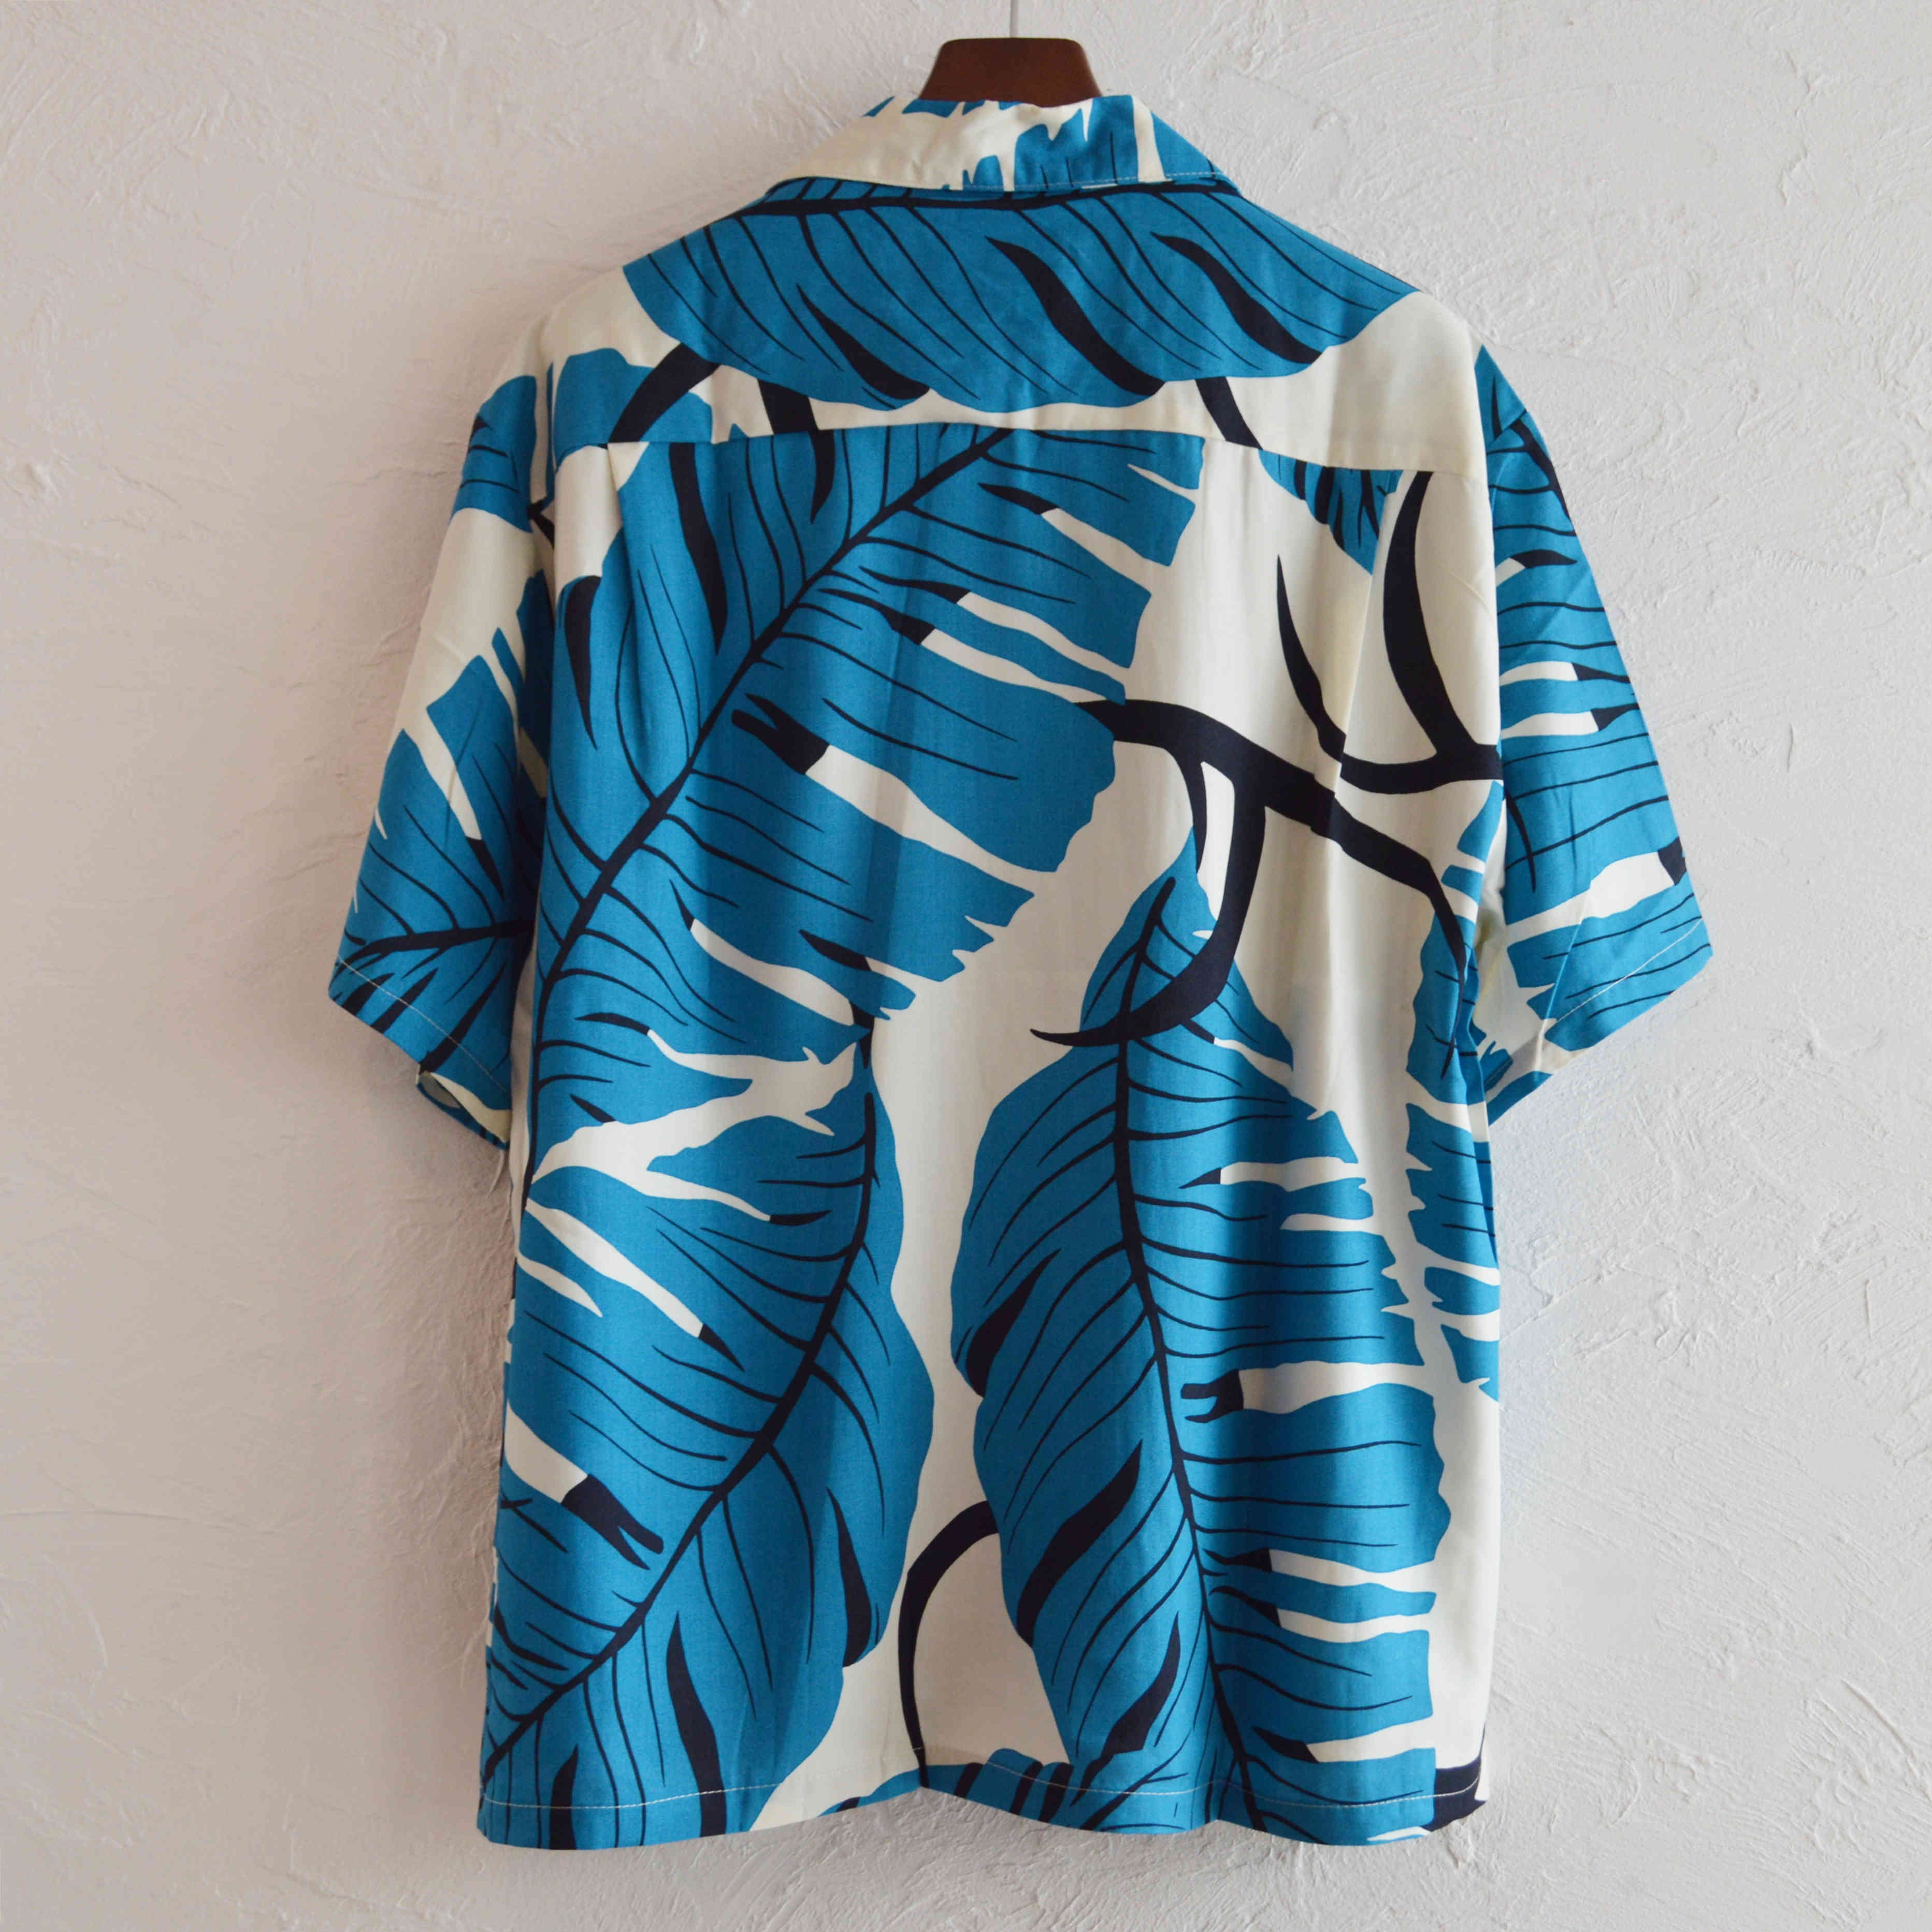 Hilo Hattie / Rayon Aloha Shirt (TEAL)